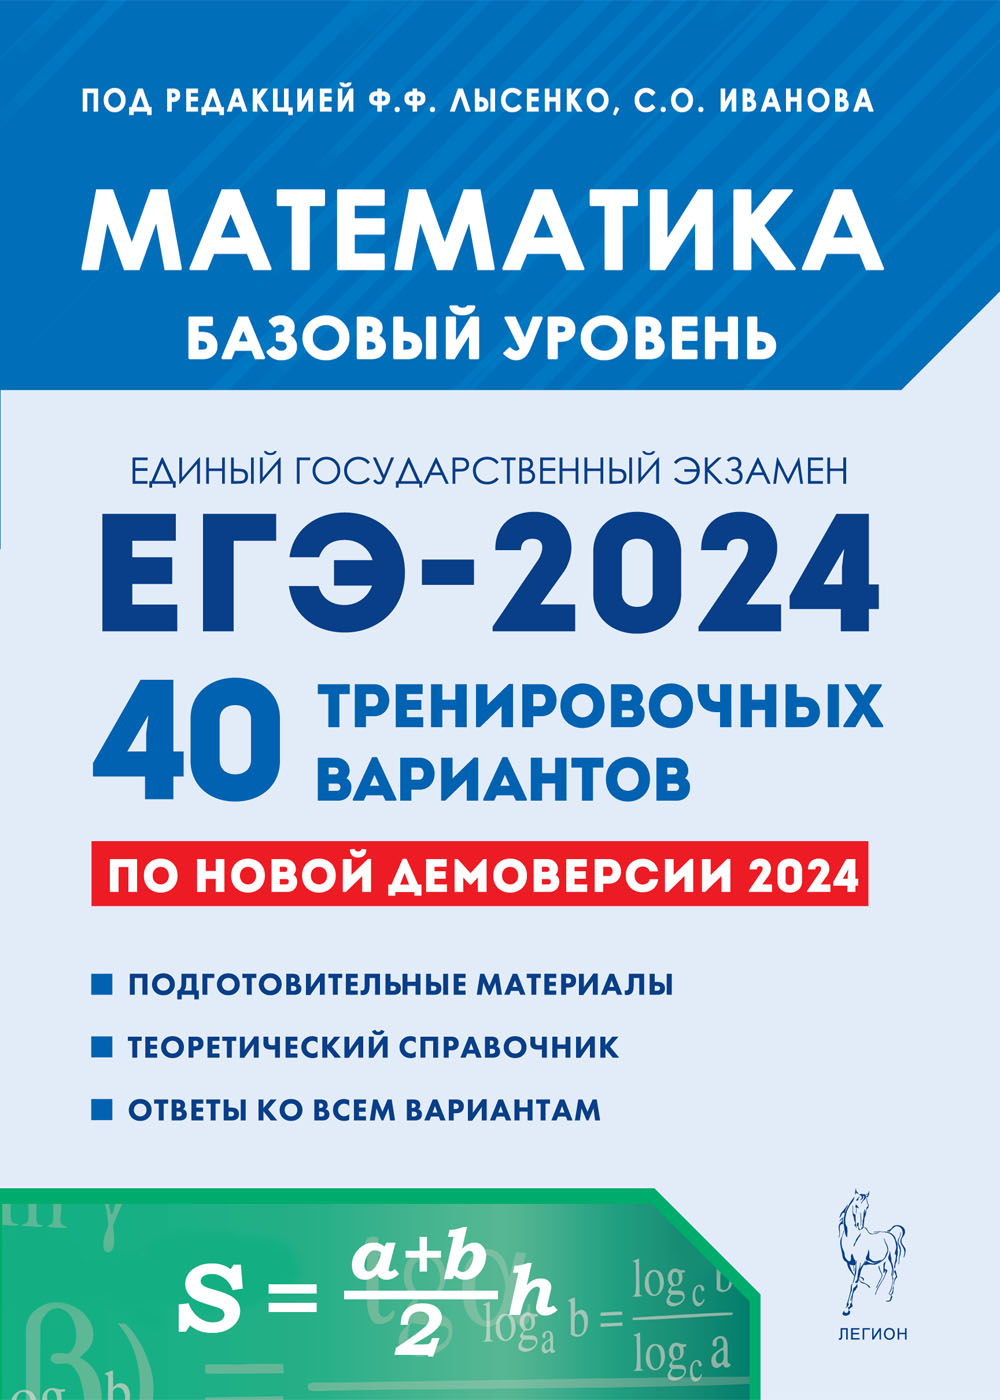 Математика. Подготовка к ЕГЭ-2024. Базовый уровень. 40 тренировочных вариантов по демоверсии 2024 года